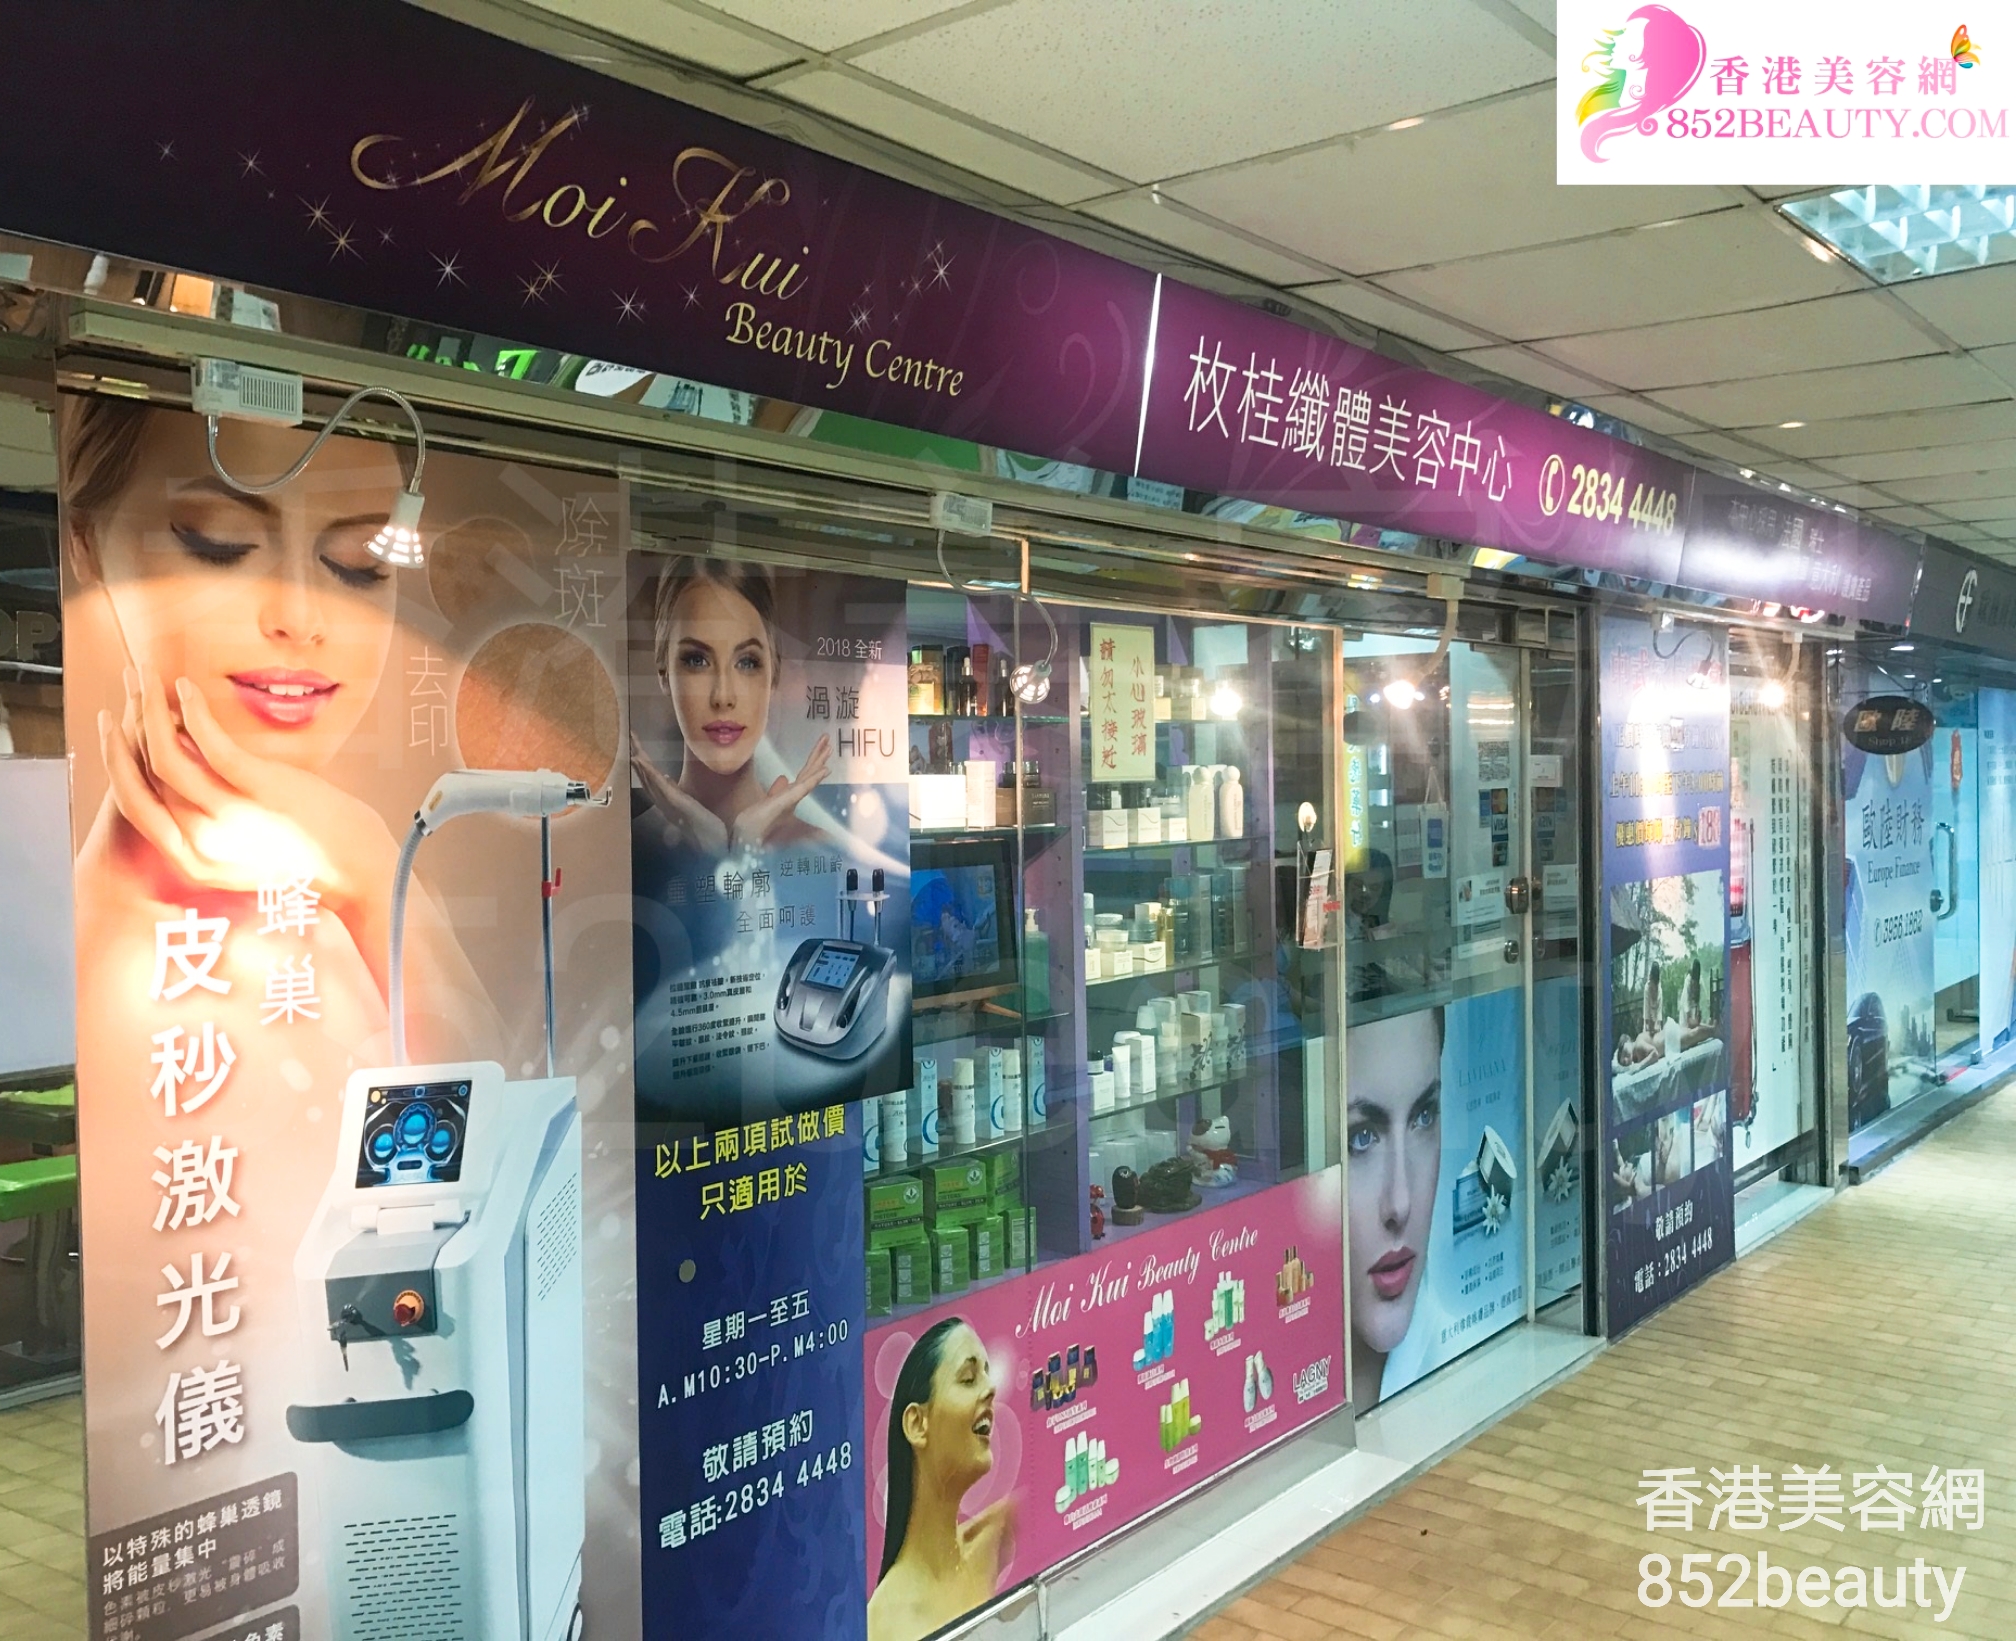 Eyelashes: 枚桂纖體美容中心 Moi Kui Beauty Centre